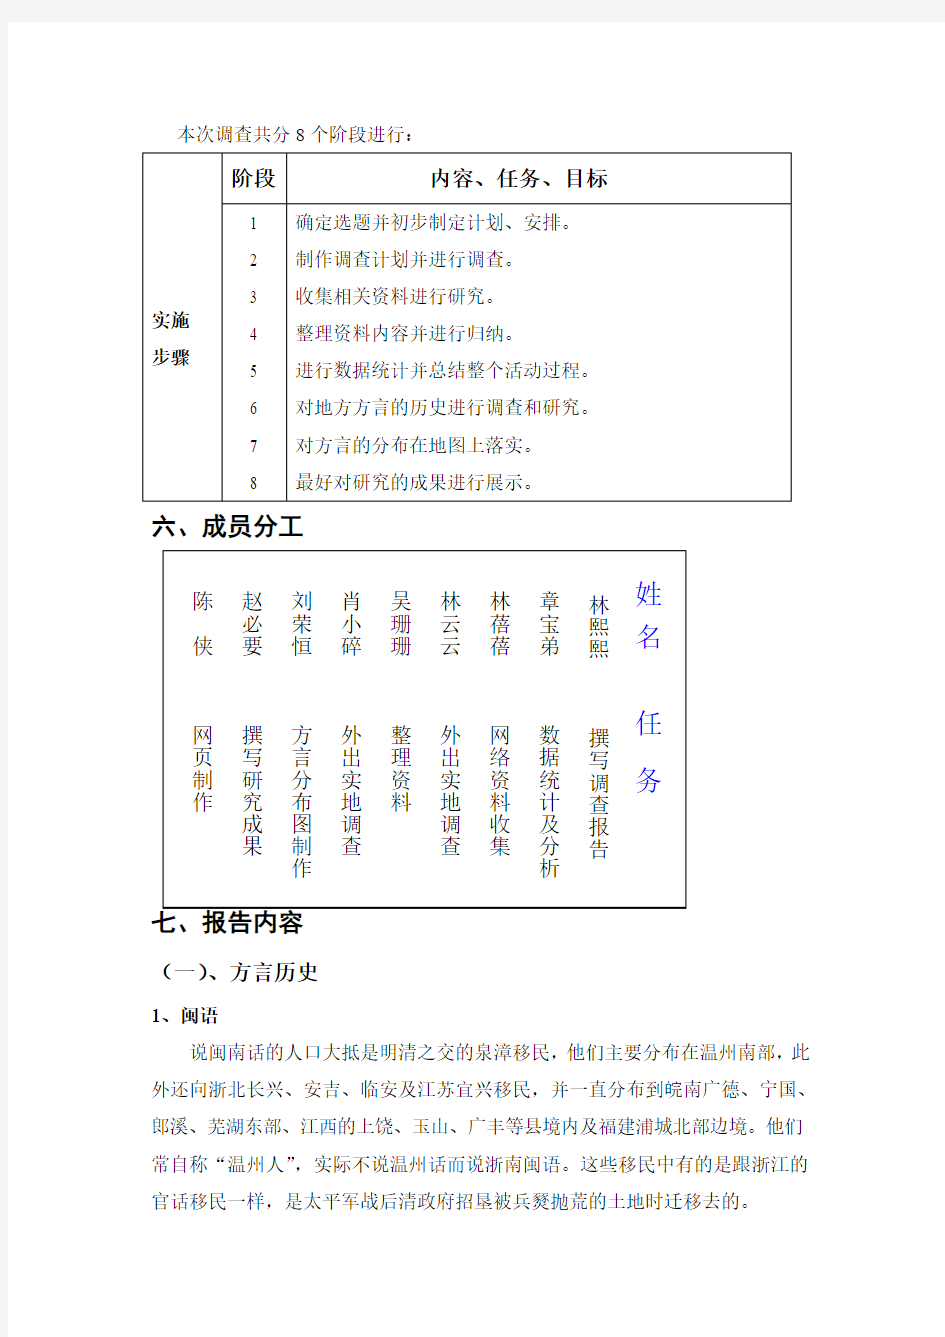 关于苍南县本地方言分布概况研究.